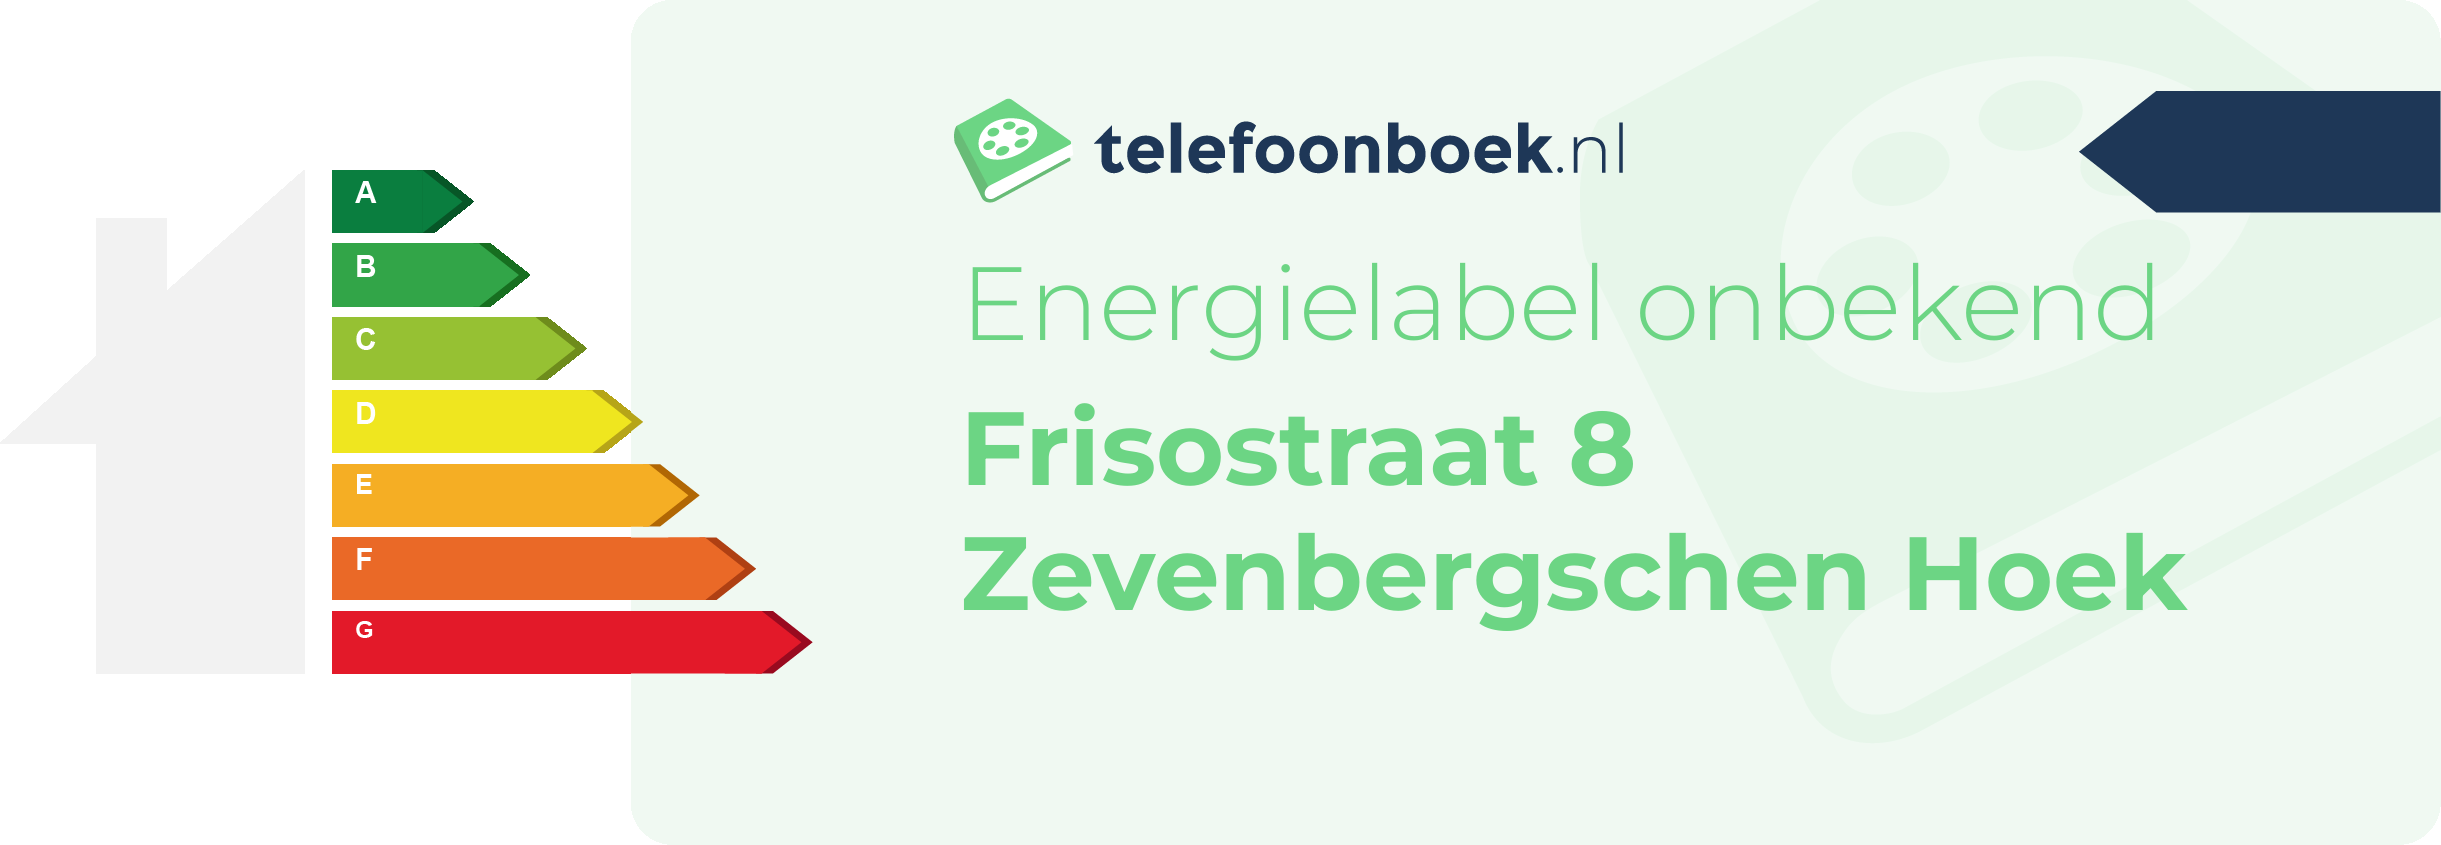 Energielabel Frisostraat 8 Zevenbergschen Hoek